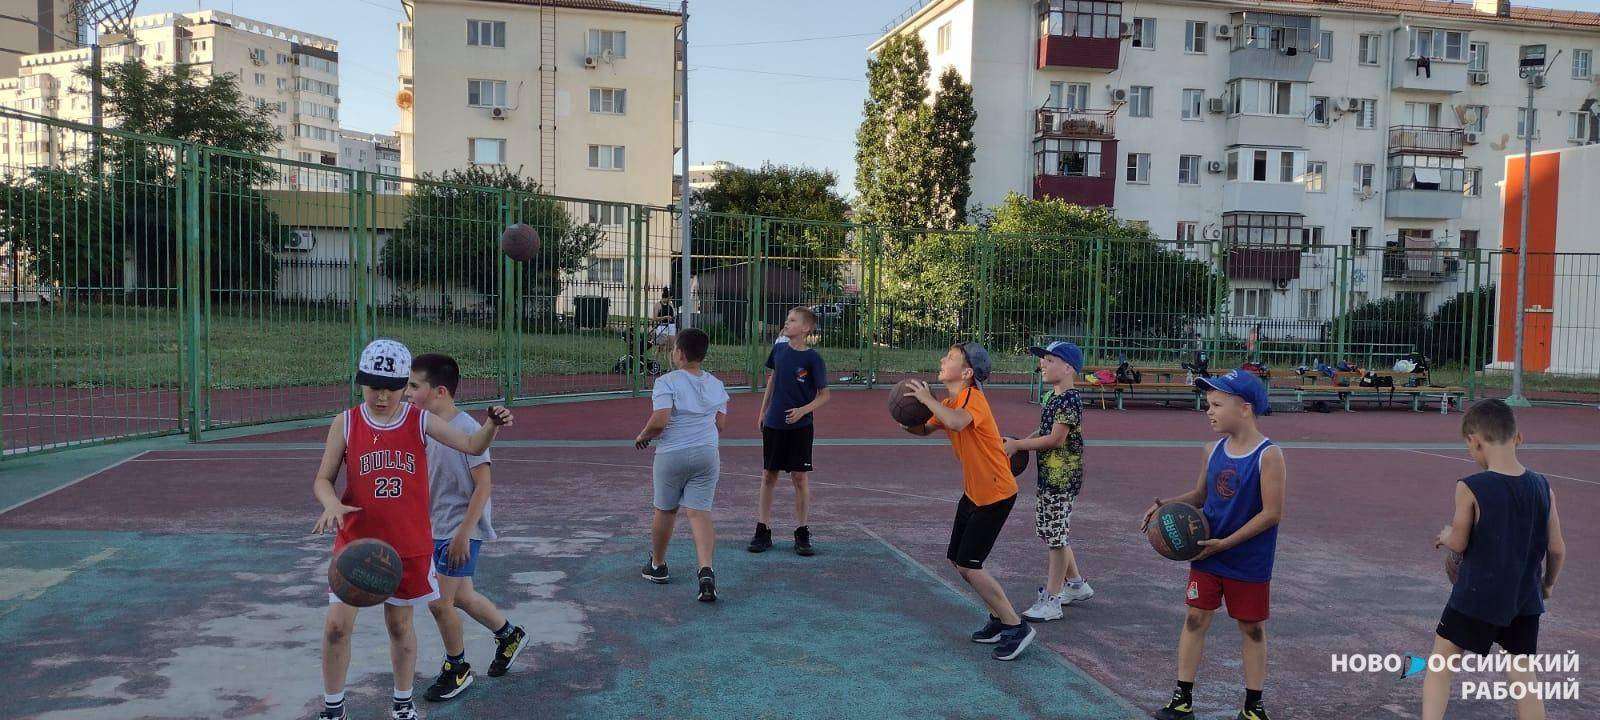 Игра в баскетбол добавит 5 сантиметров роста? Новороссийский тренер о байках, бесплатных тренировках и отсутствии спортзалов